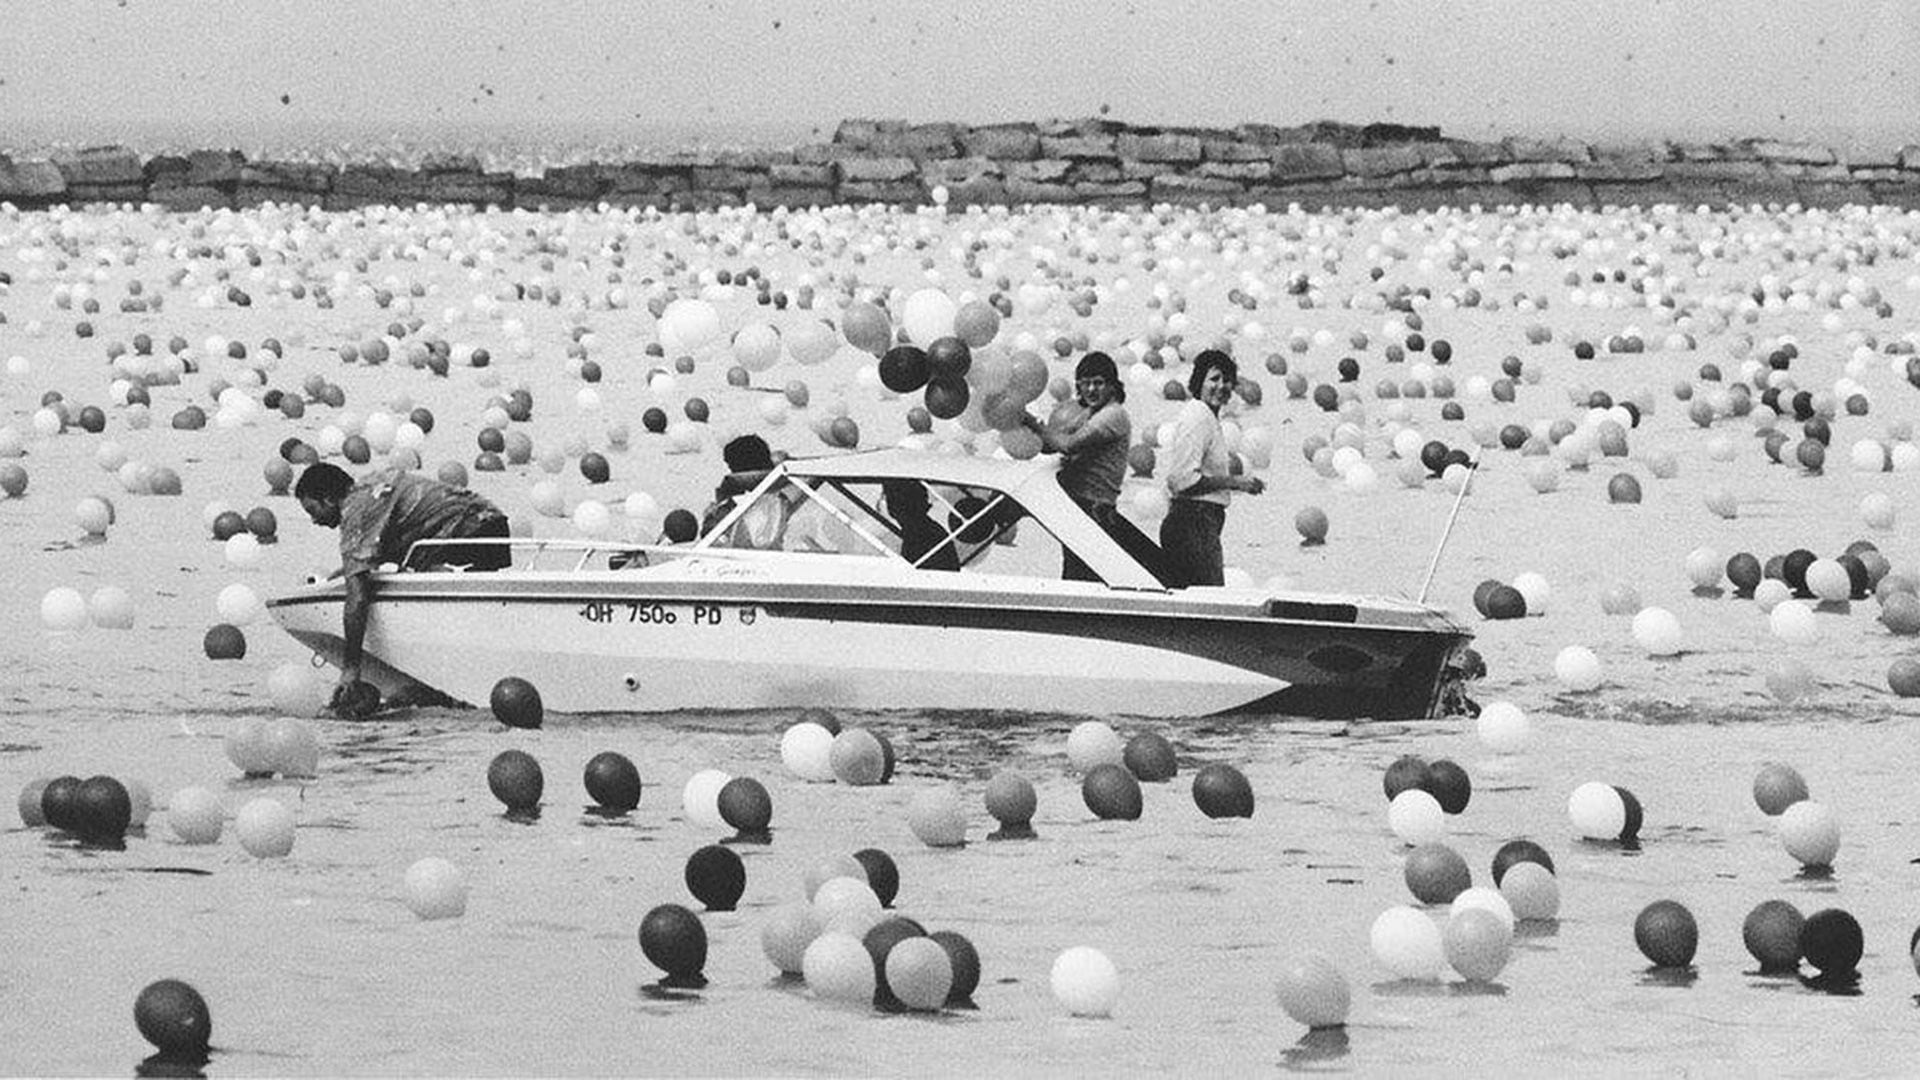 Cientos de miles de globos cayeron al lago Erie luego del lanzamiento, e hicieron que la guardia costera abandonara la búsqueda de dos pescadores que se habían reportado desaparecidos poco antes 